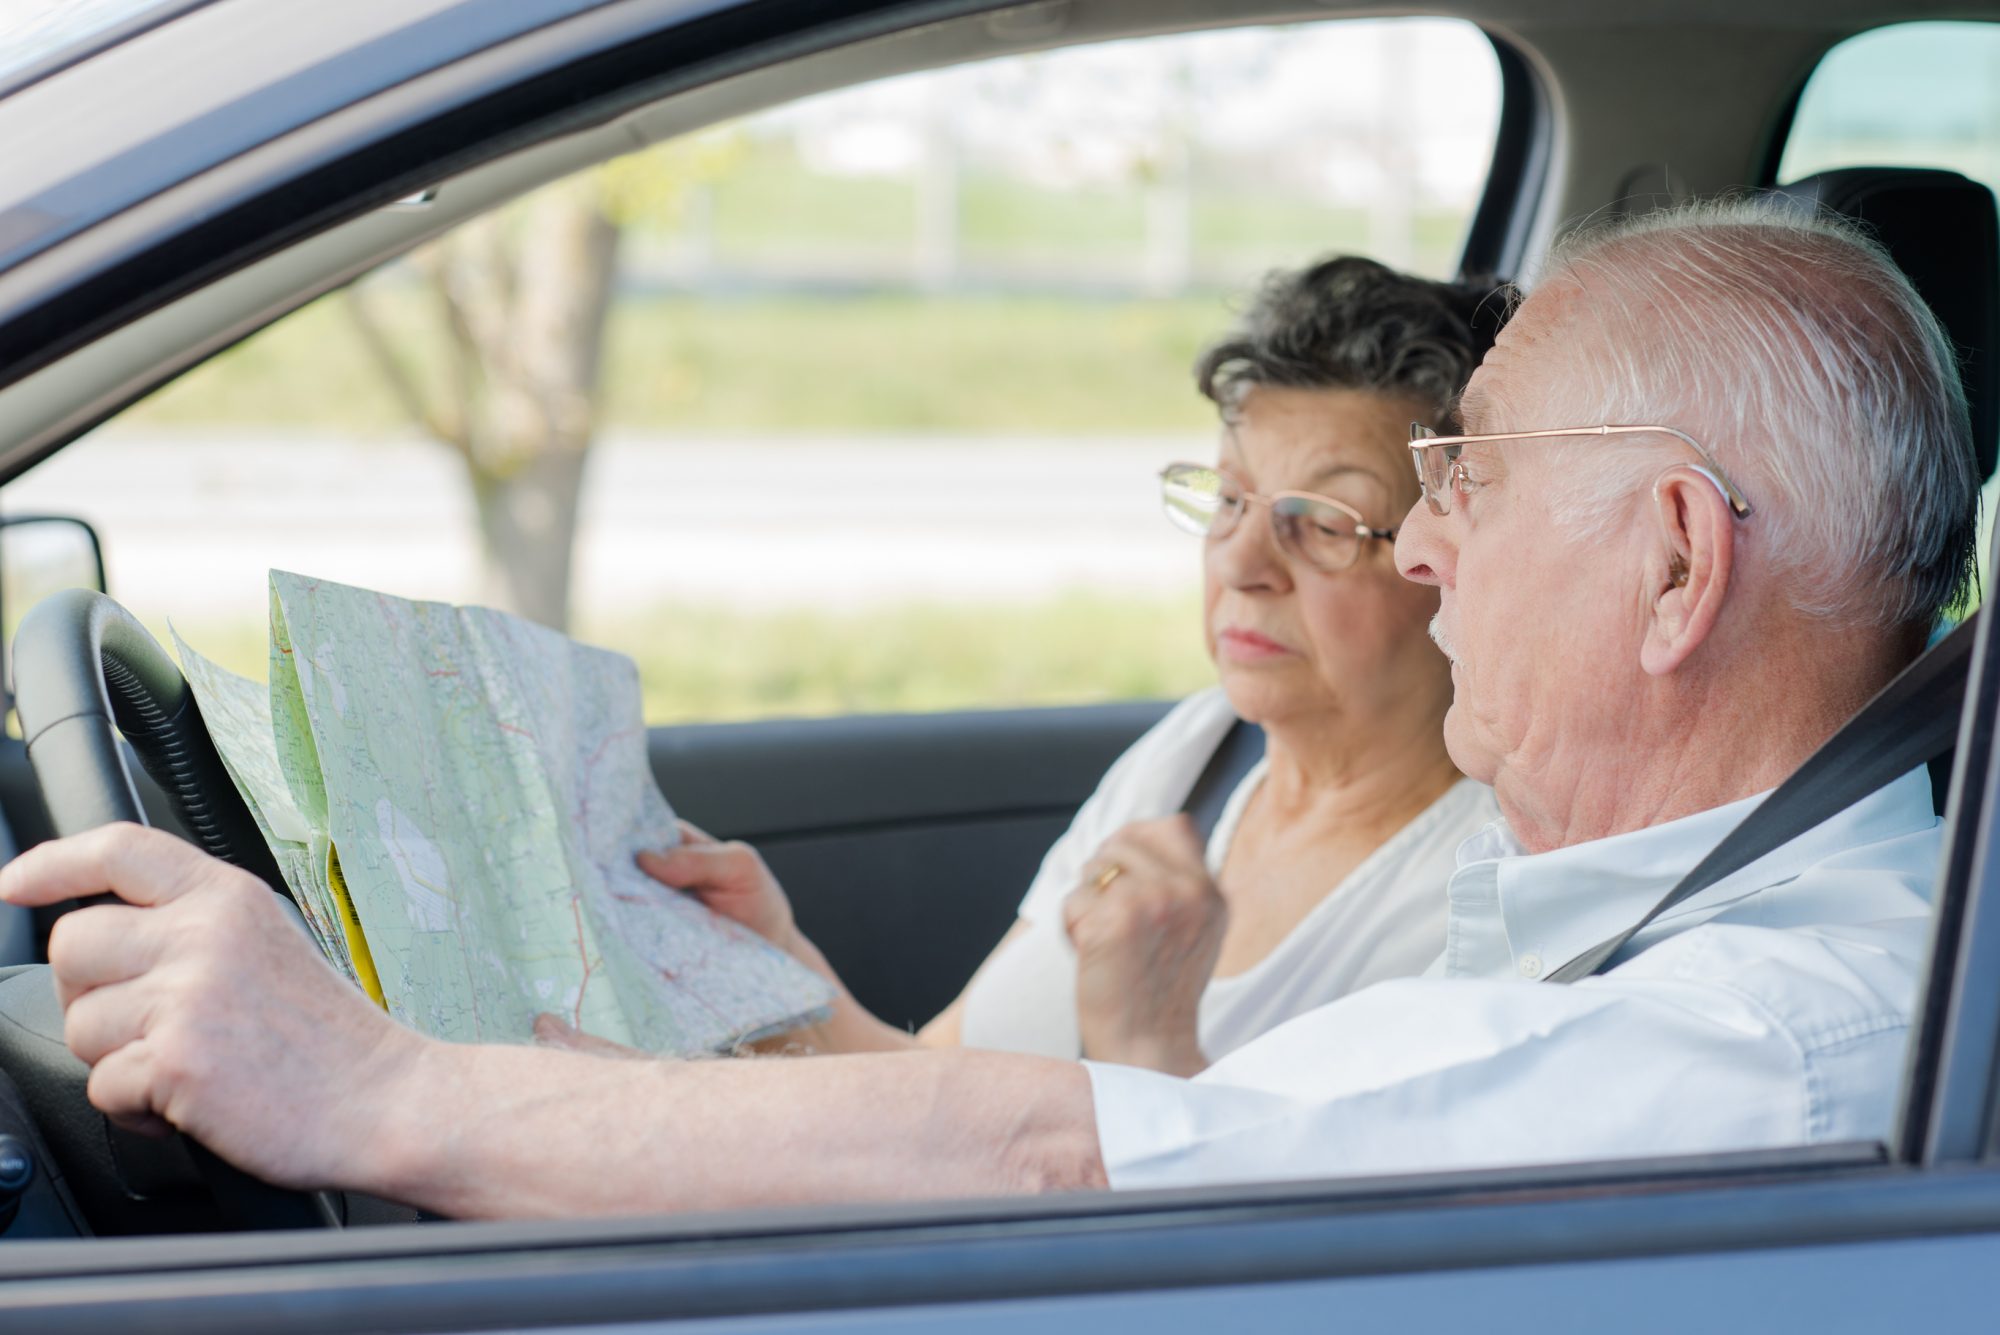 Дали постарите луѓе зад воланот предизвикуваат повеќе сообраќајни несреќи? Статистиката не вели така